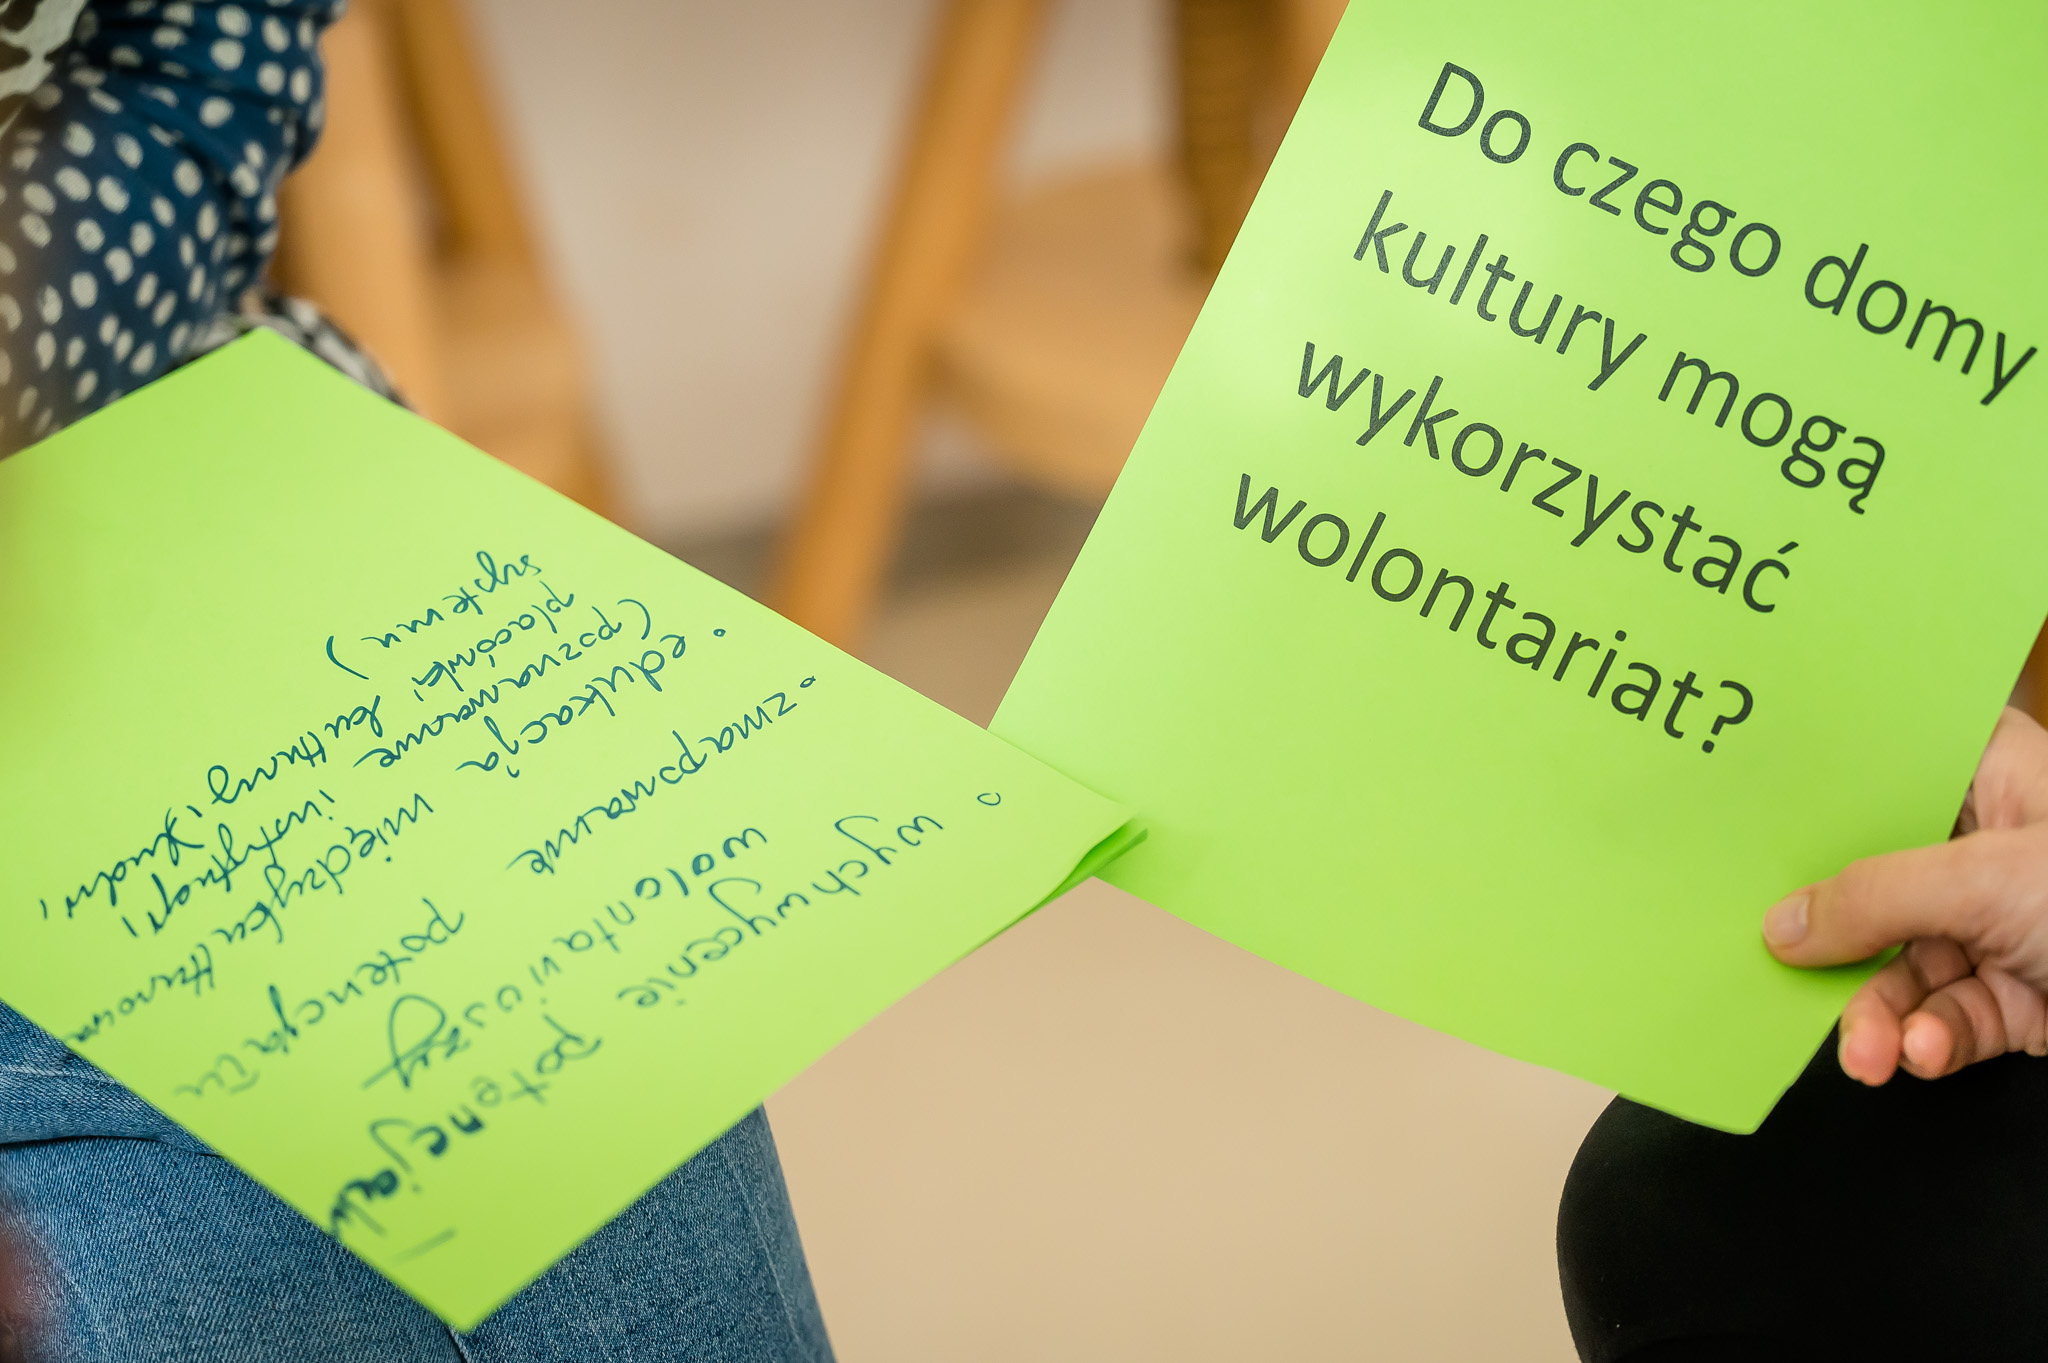 kartka z napisem "do czego domy kultury mogą wykorzystać wolontariat?" trzymana w ręku, na kolanach drugiej osoby kartka z wypracowanymi pomysłami